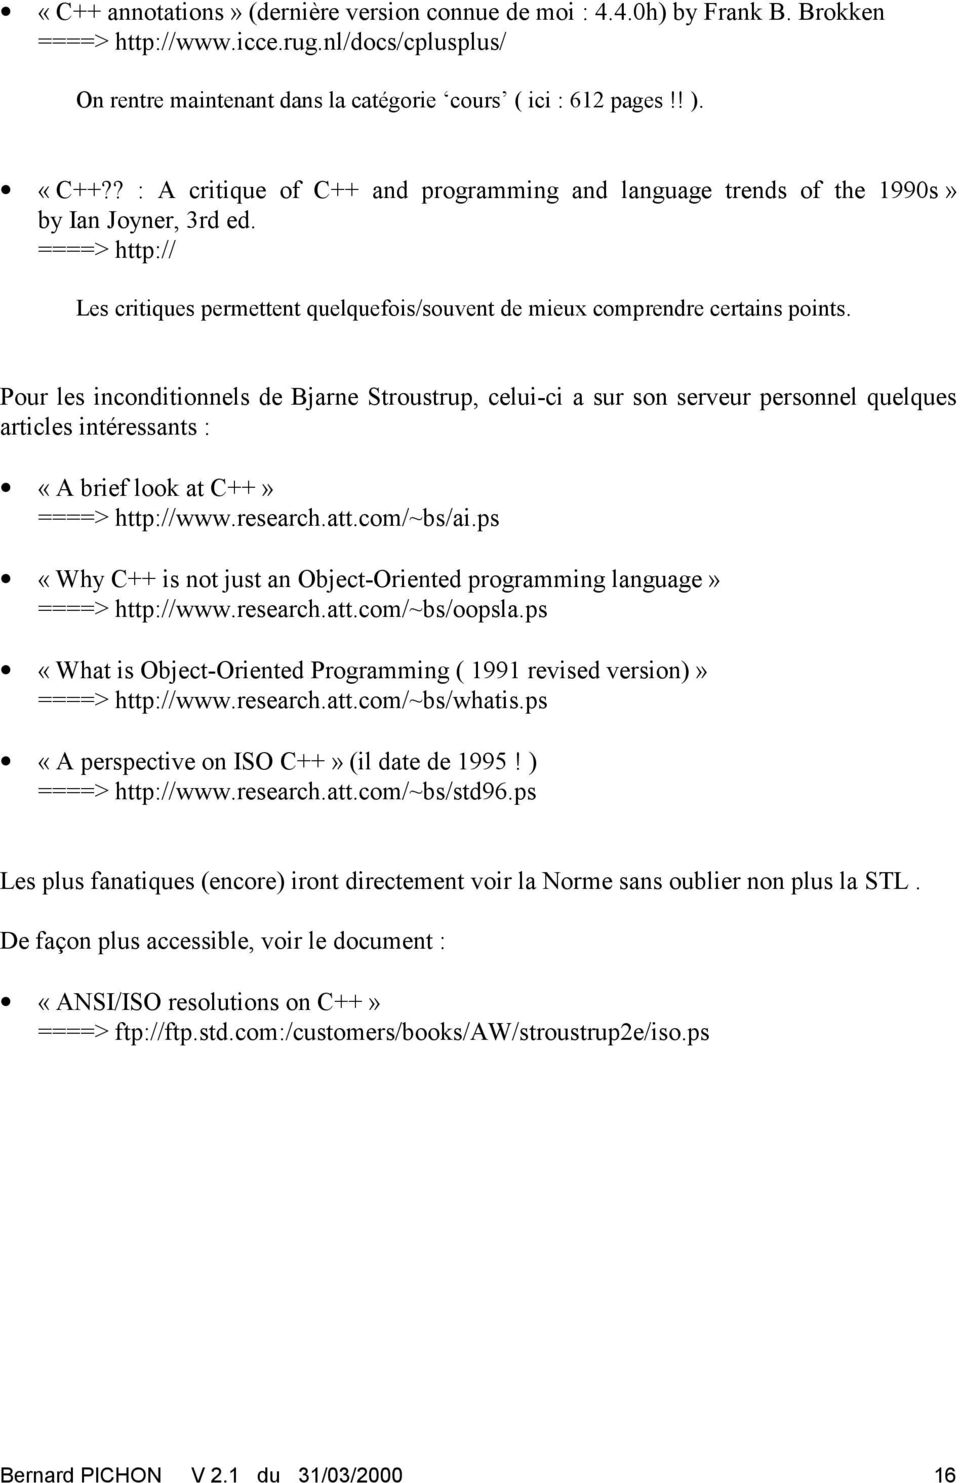 Pour les inconditionnels de Bjarne Stroustrup, celui-ci a sur son serveur personnel quelques articles intéressants : «A brief look at C++» ====> http://www.research.att.com/~bs/ai.